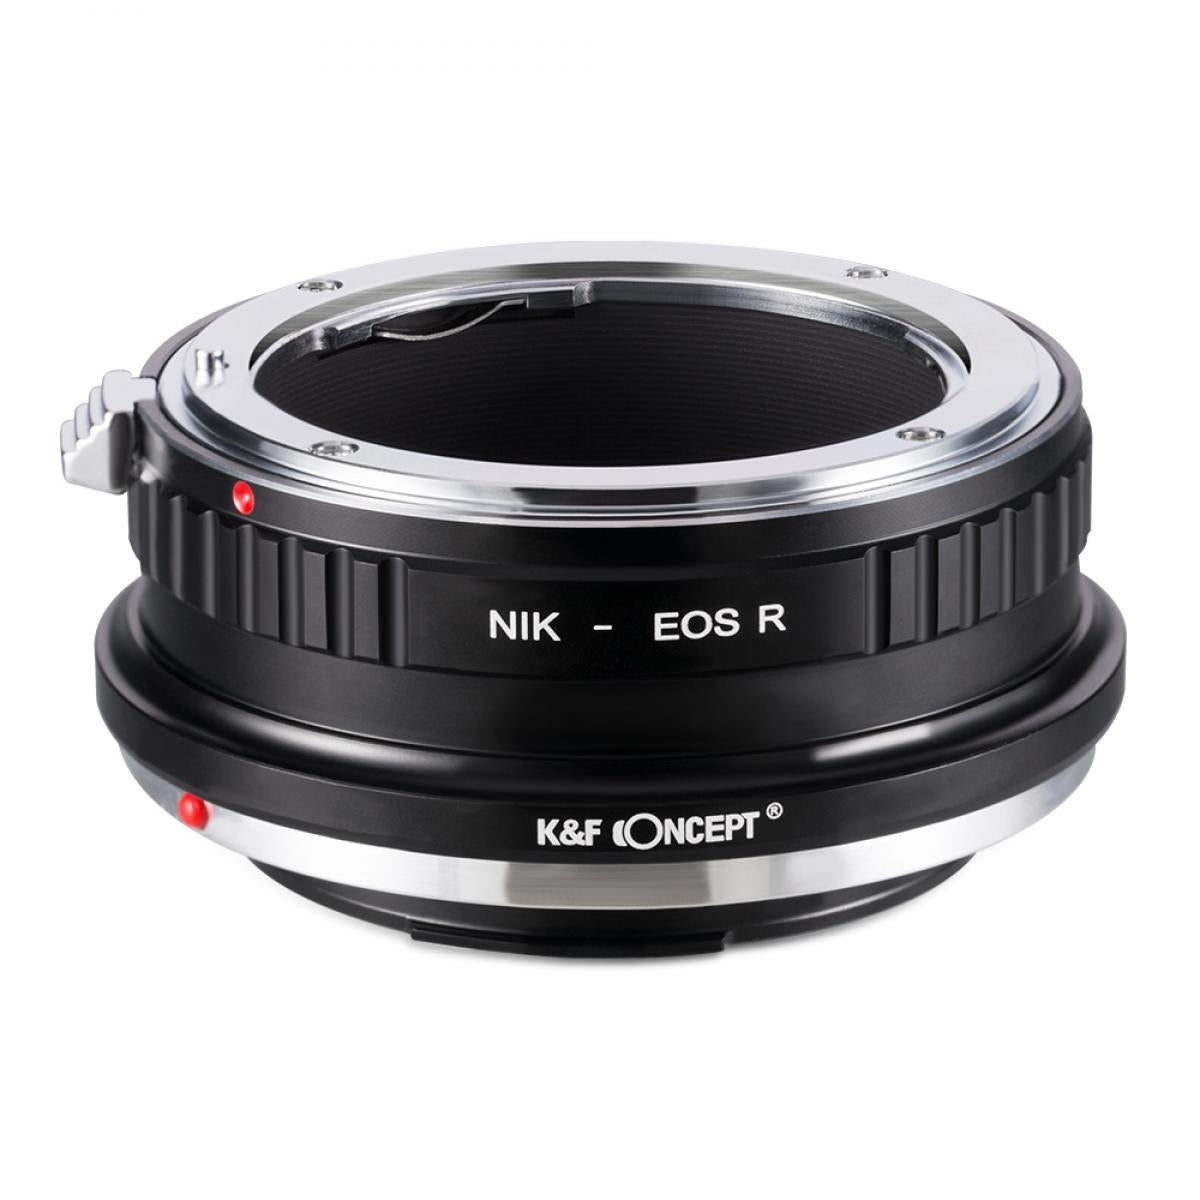 K&F Concept Anello Adattatore per Obiettivi Nikon F a Canon EOS R